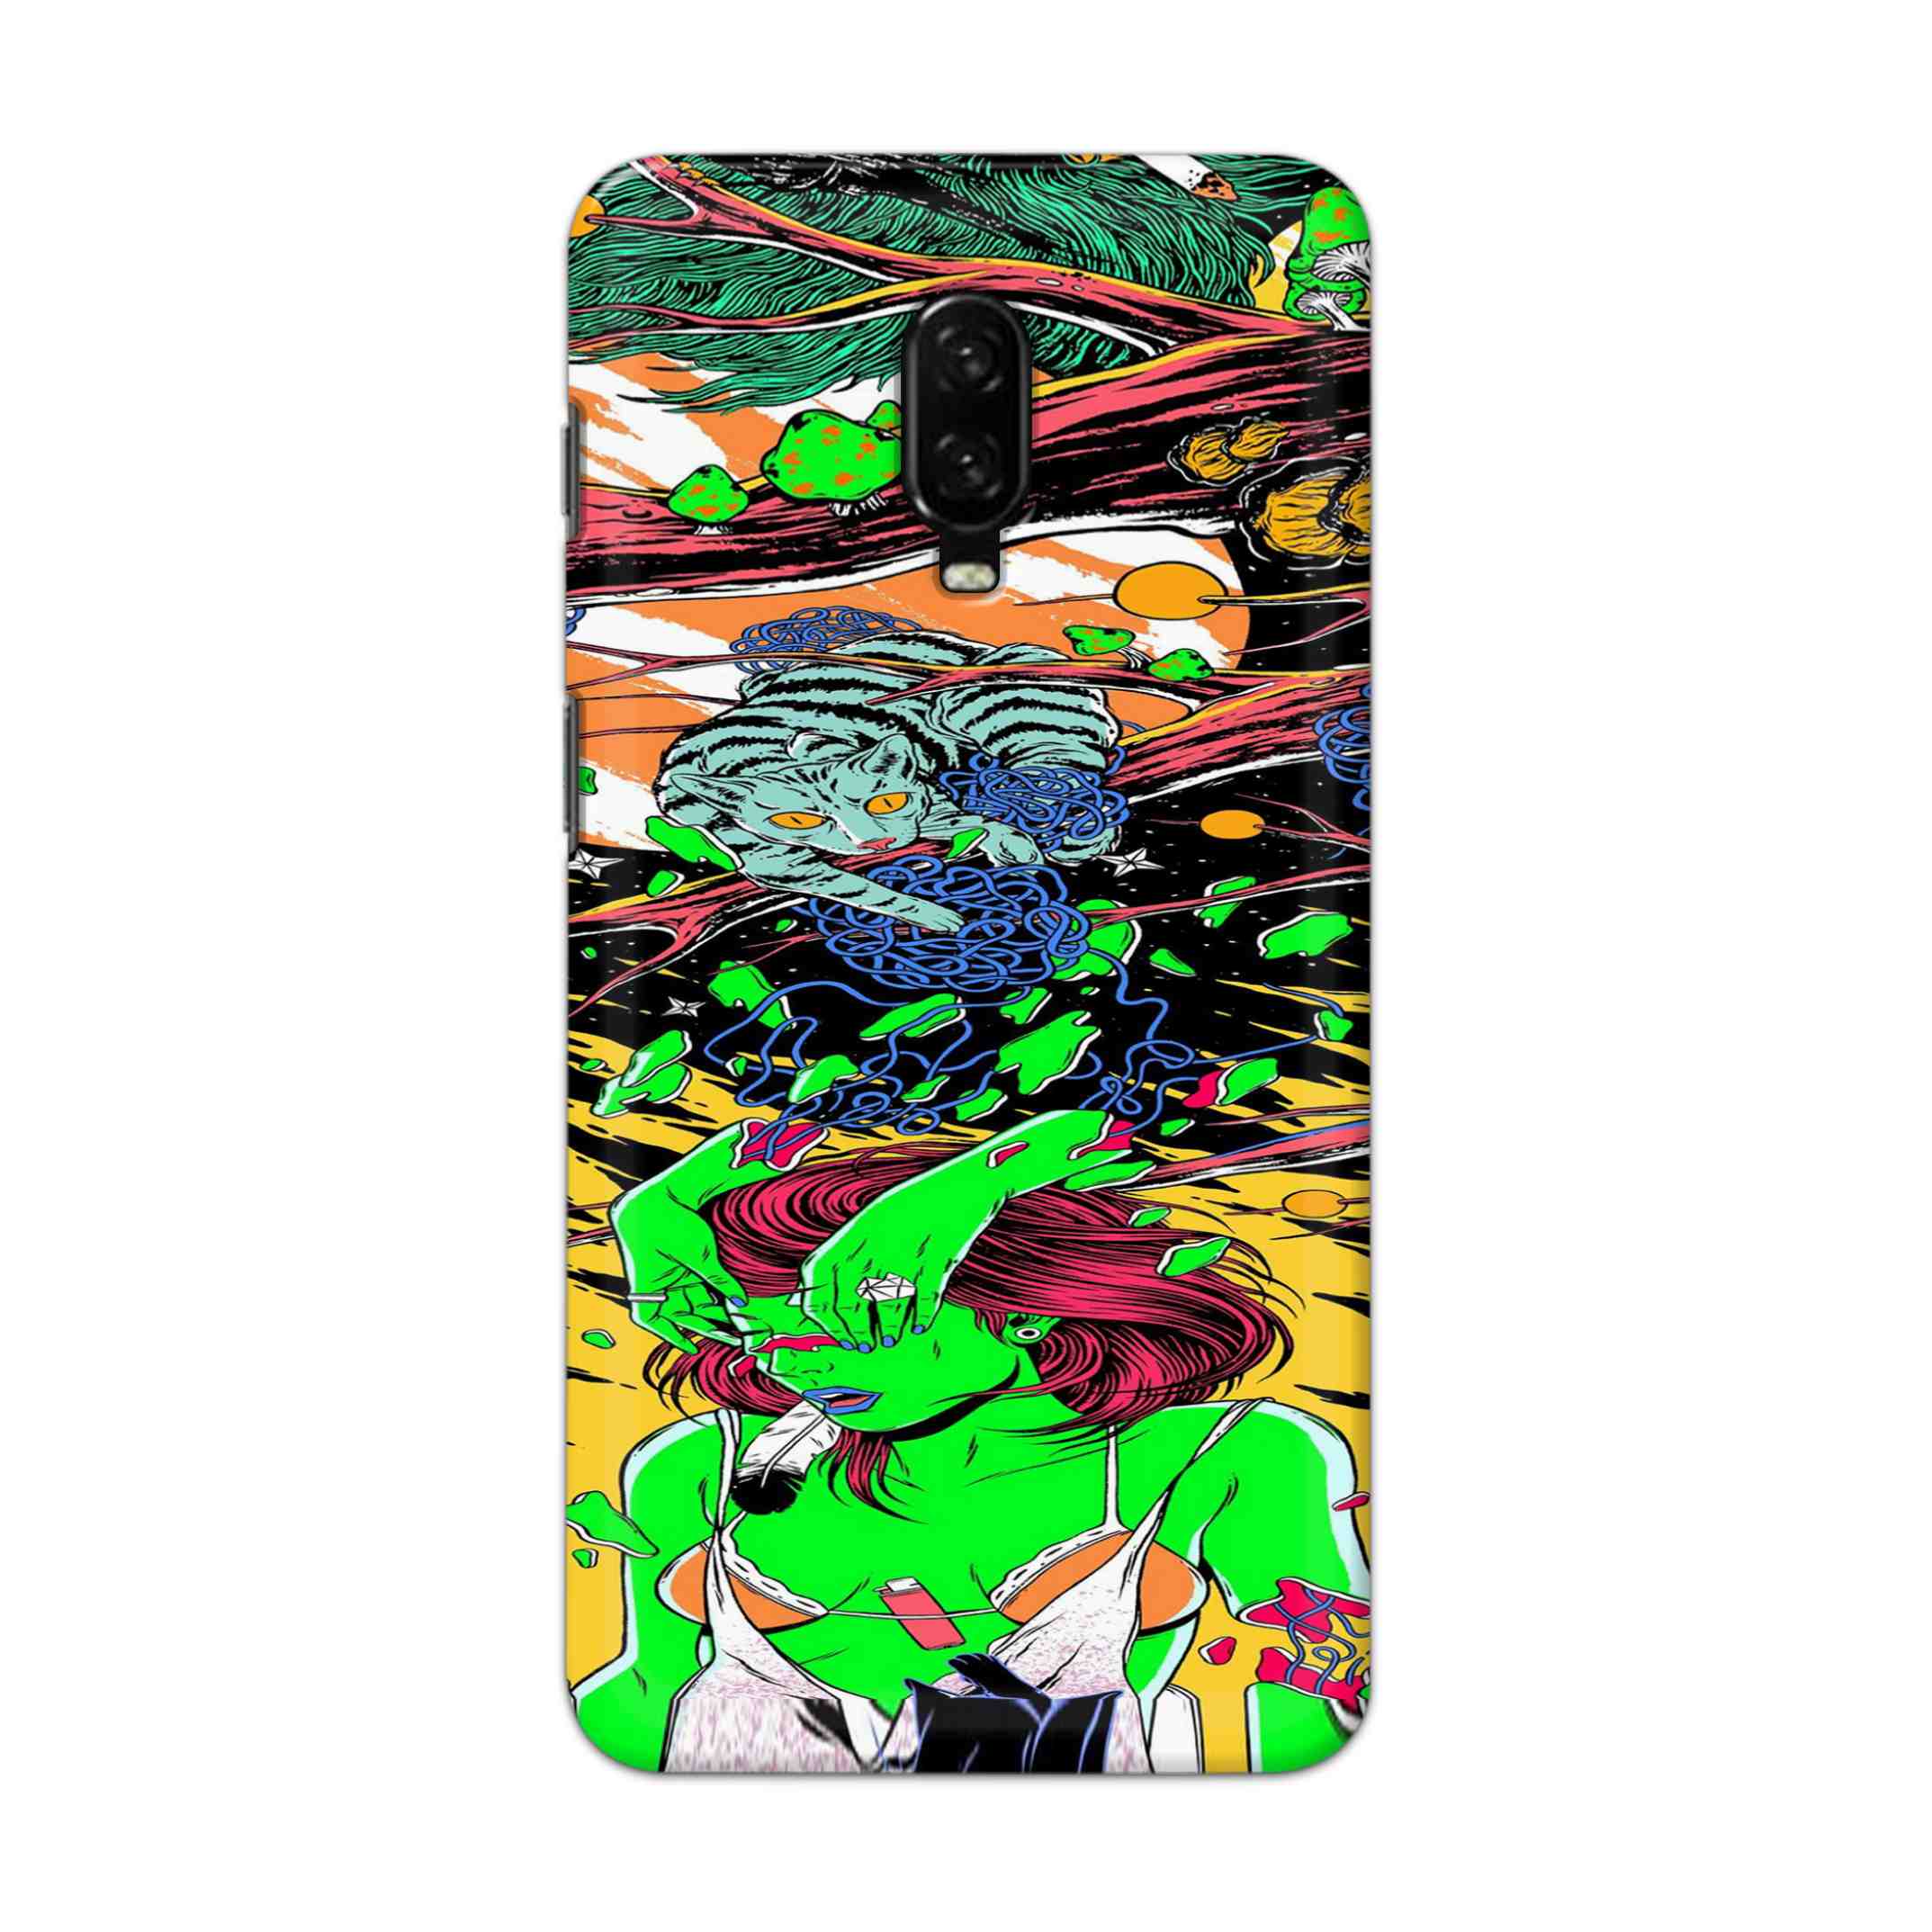 Buy Green Girl Art Hard Back Mobile Phone Case Cover For OnePlus 6T Online